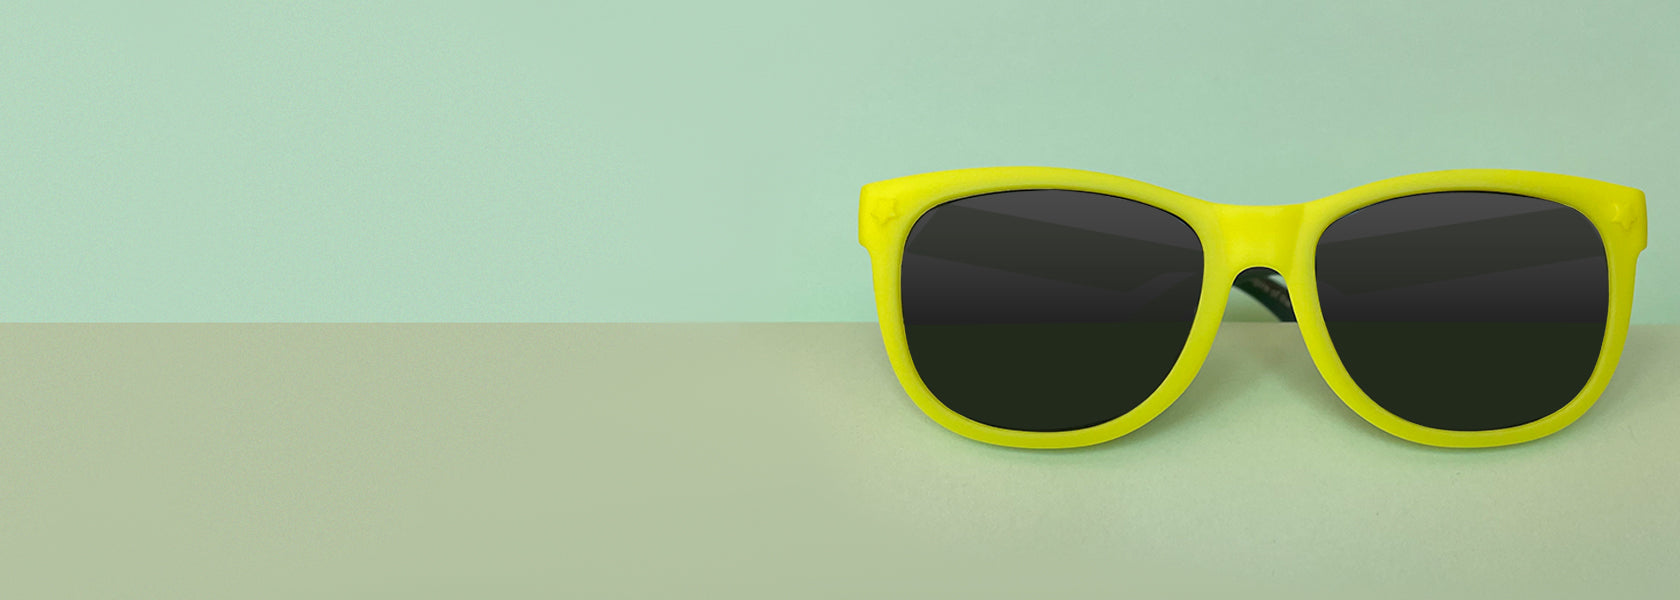 Baby sunglasses UV400